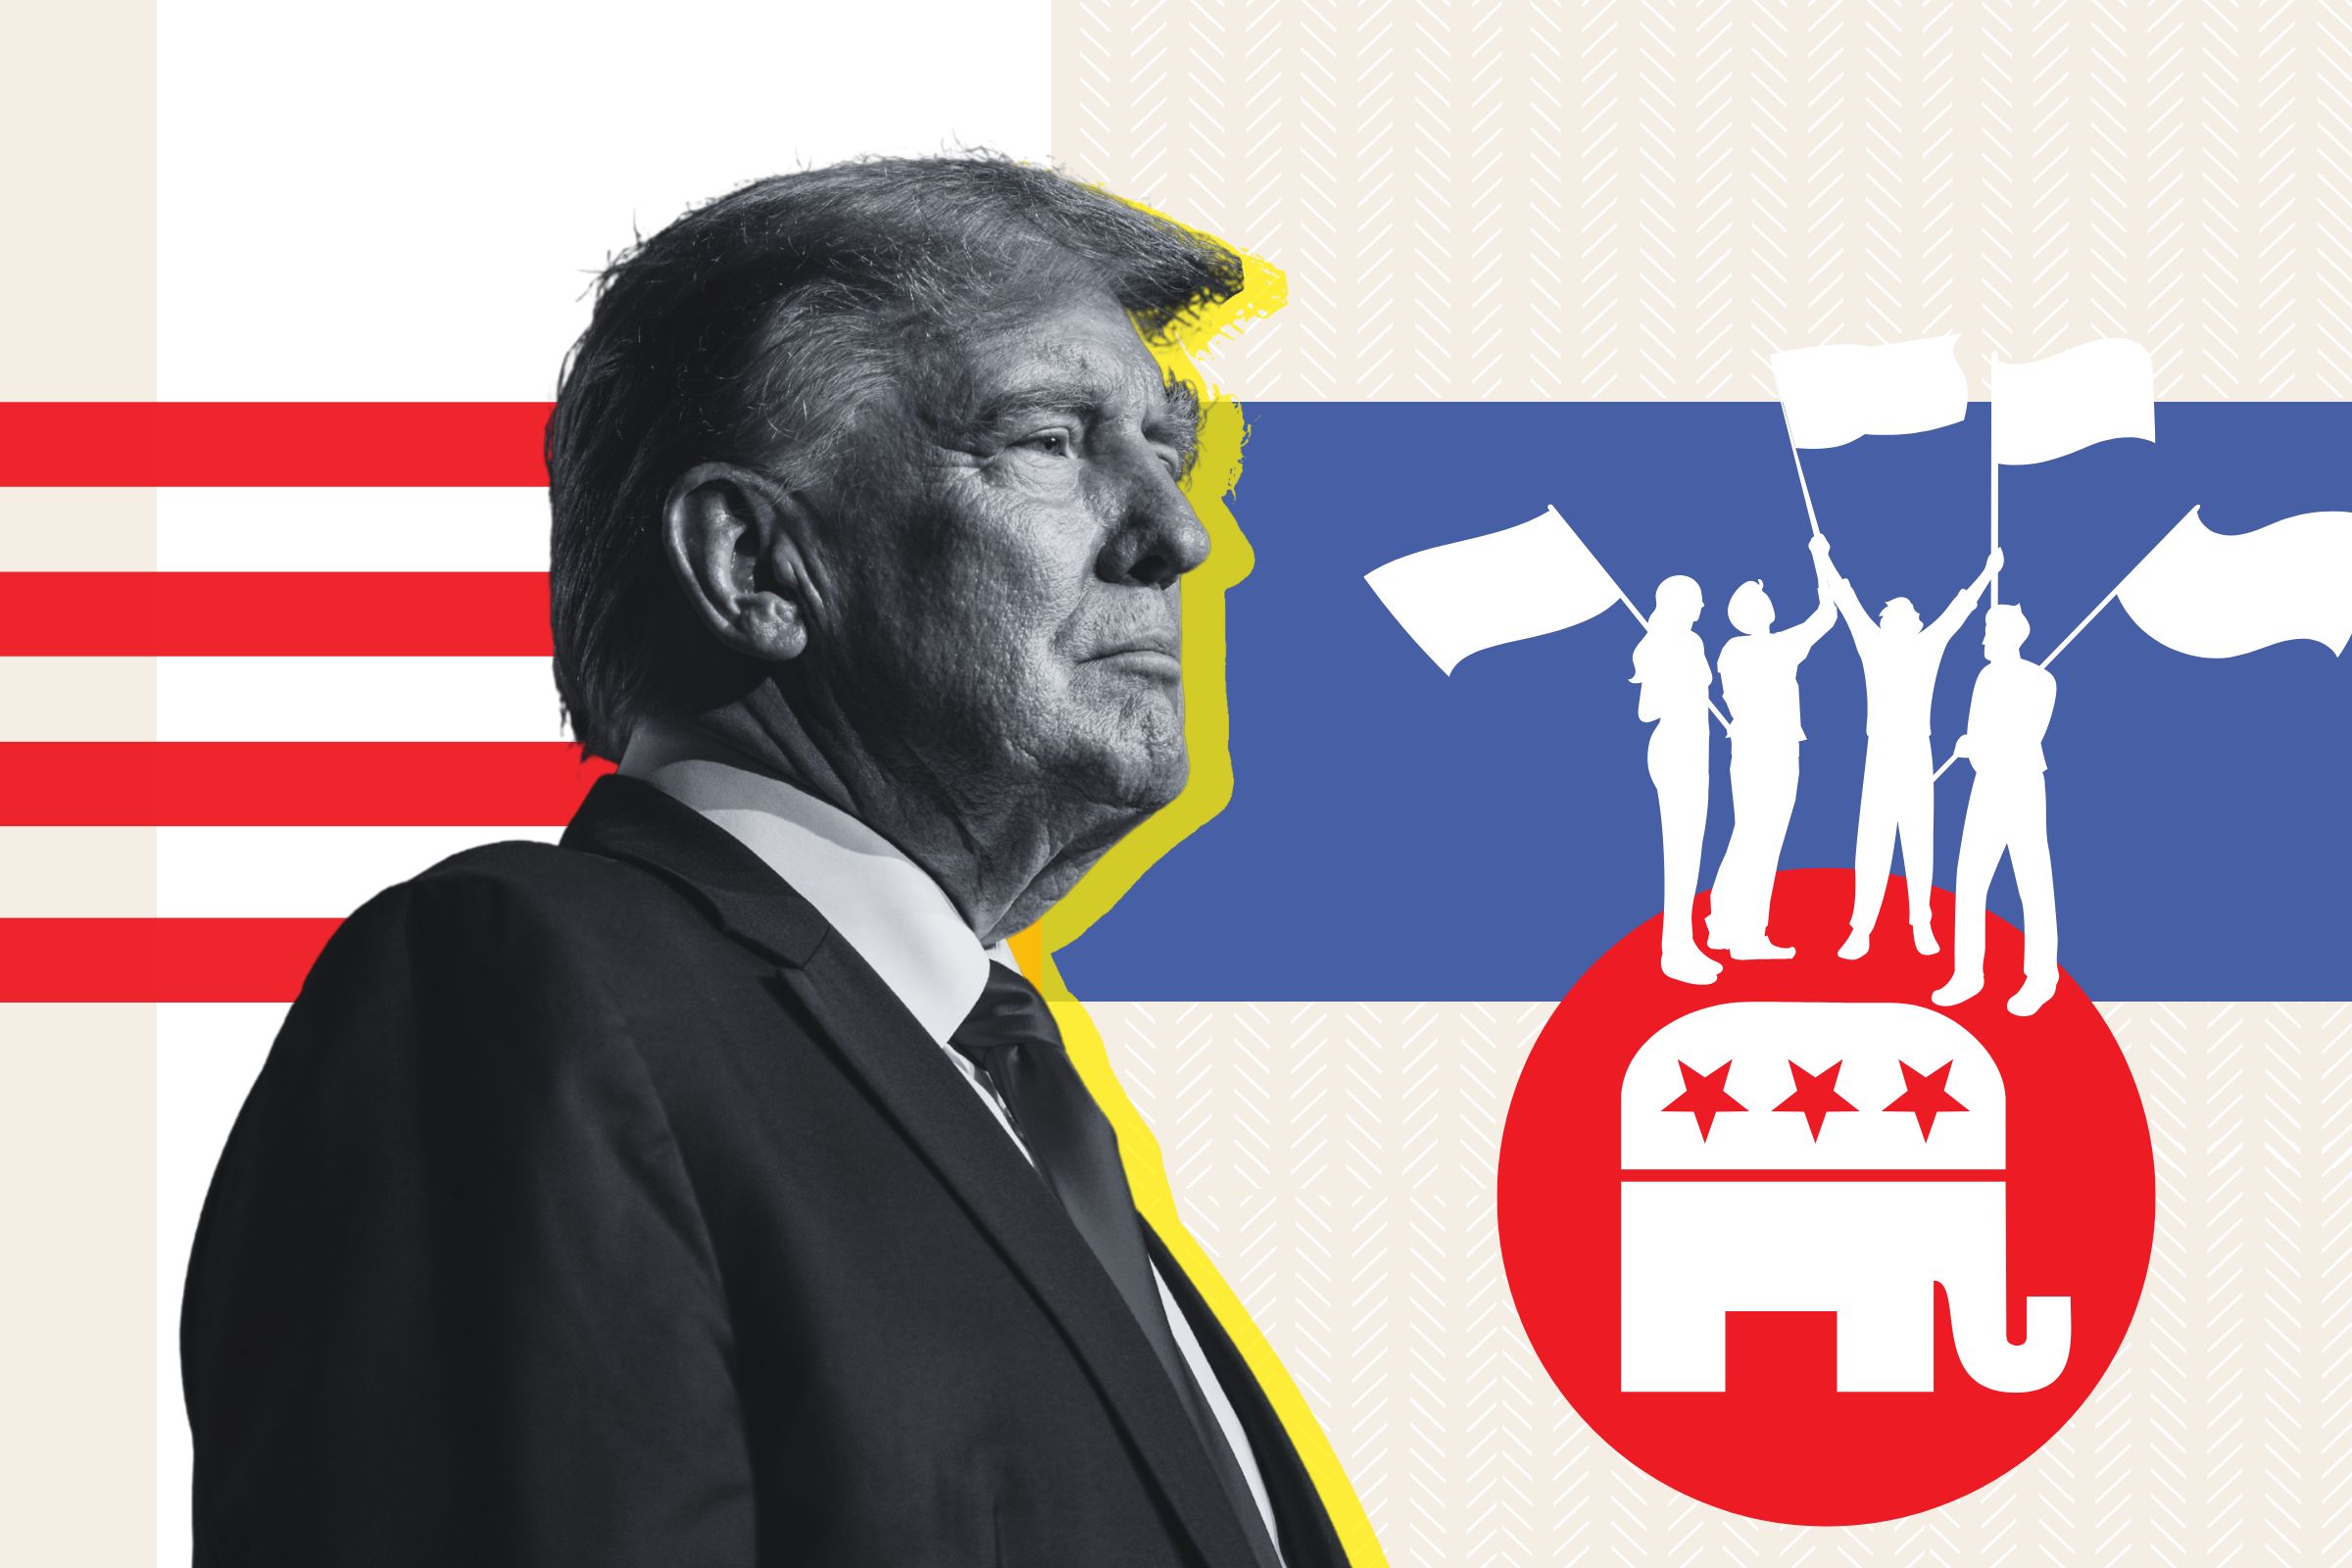 Les républicains anti-Trump pourraient-ils former un tout nouveau parti ?